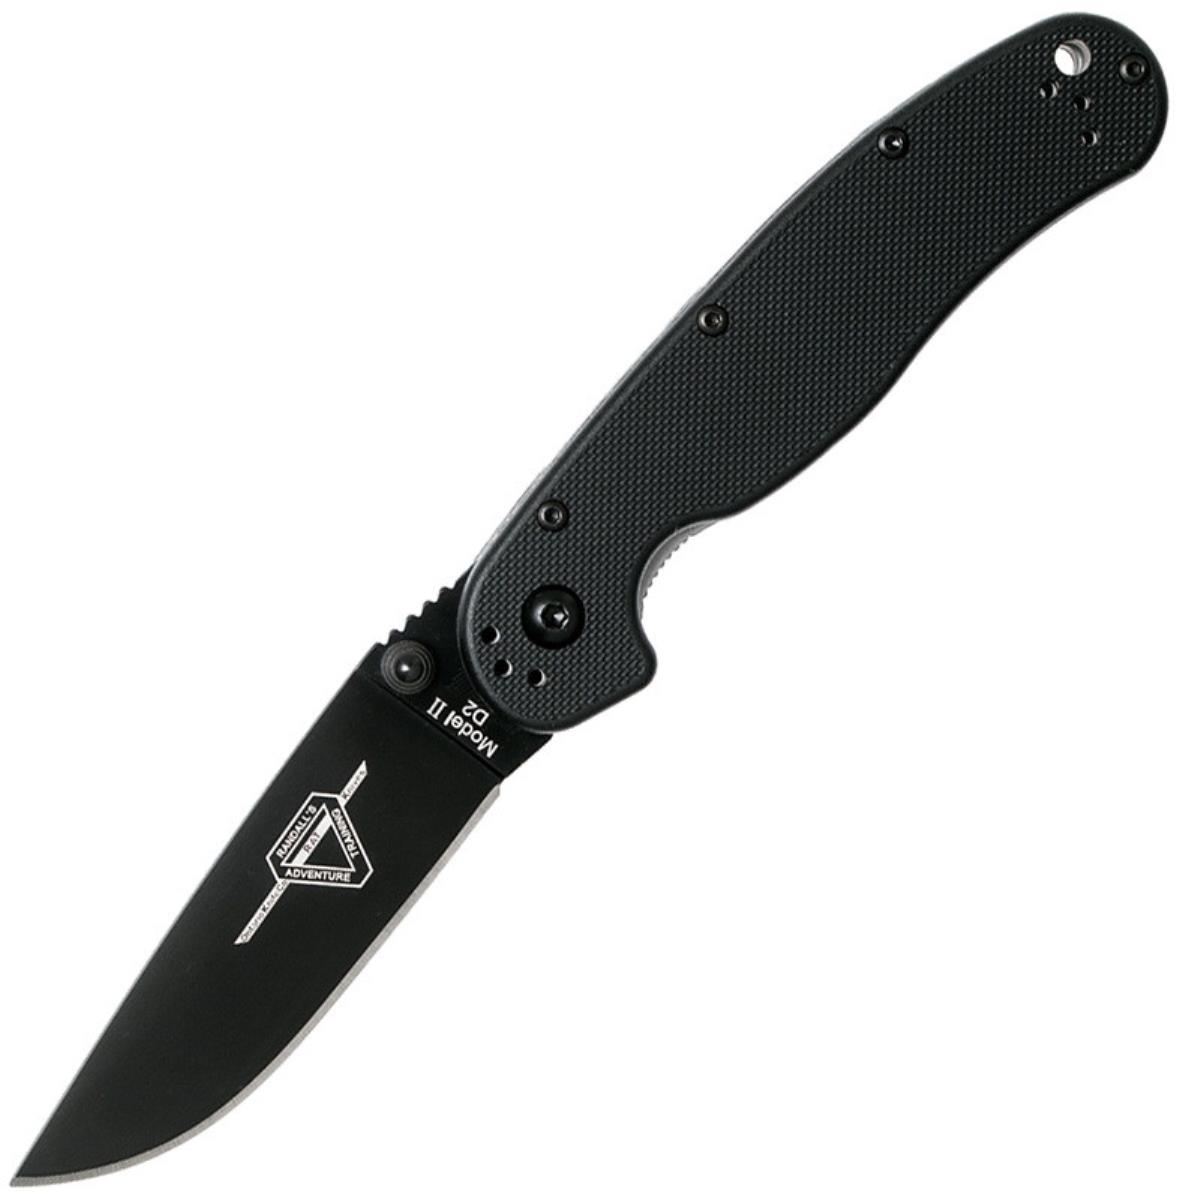 Нож RAT II складн.,чёрная нейлоновая рукоять, клинок AUS8 чёрное покрытие (8861)  ONTARIO нож carter trinity складн чёрная рукоять титан g10 клинок aus8 8877 ontario